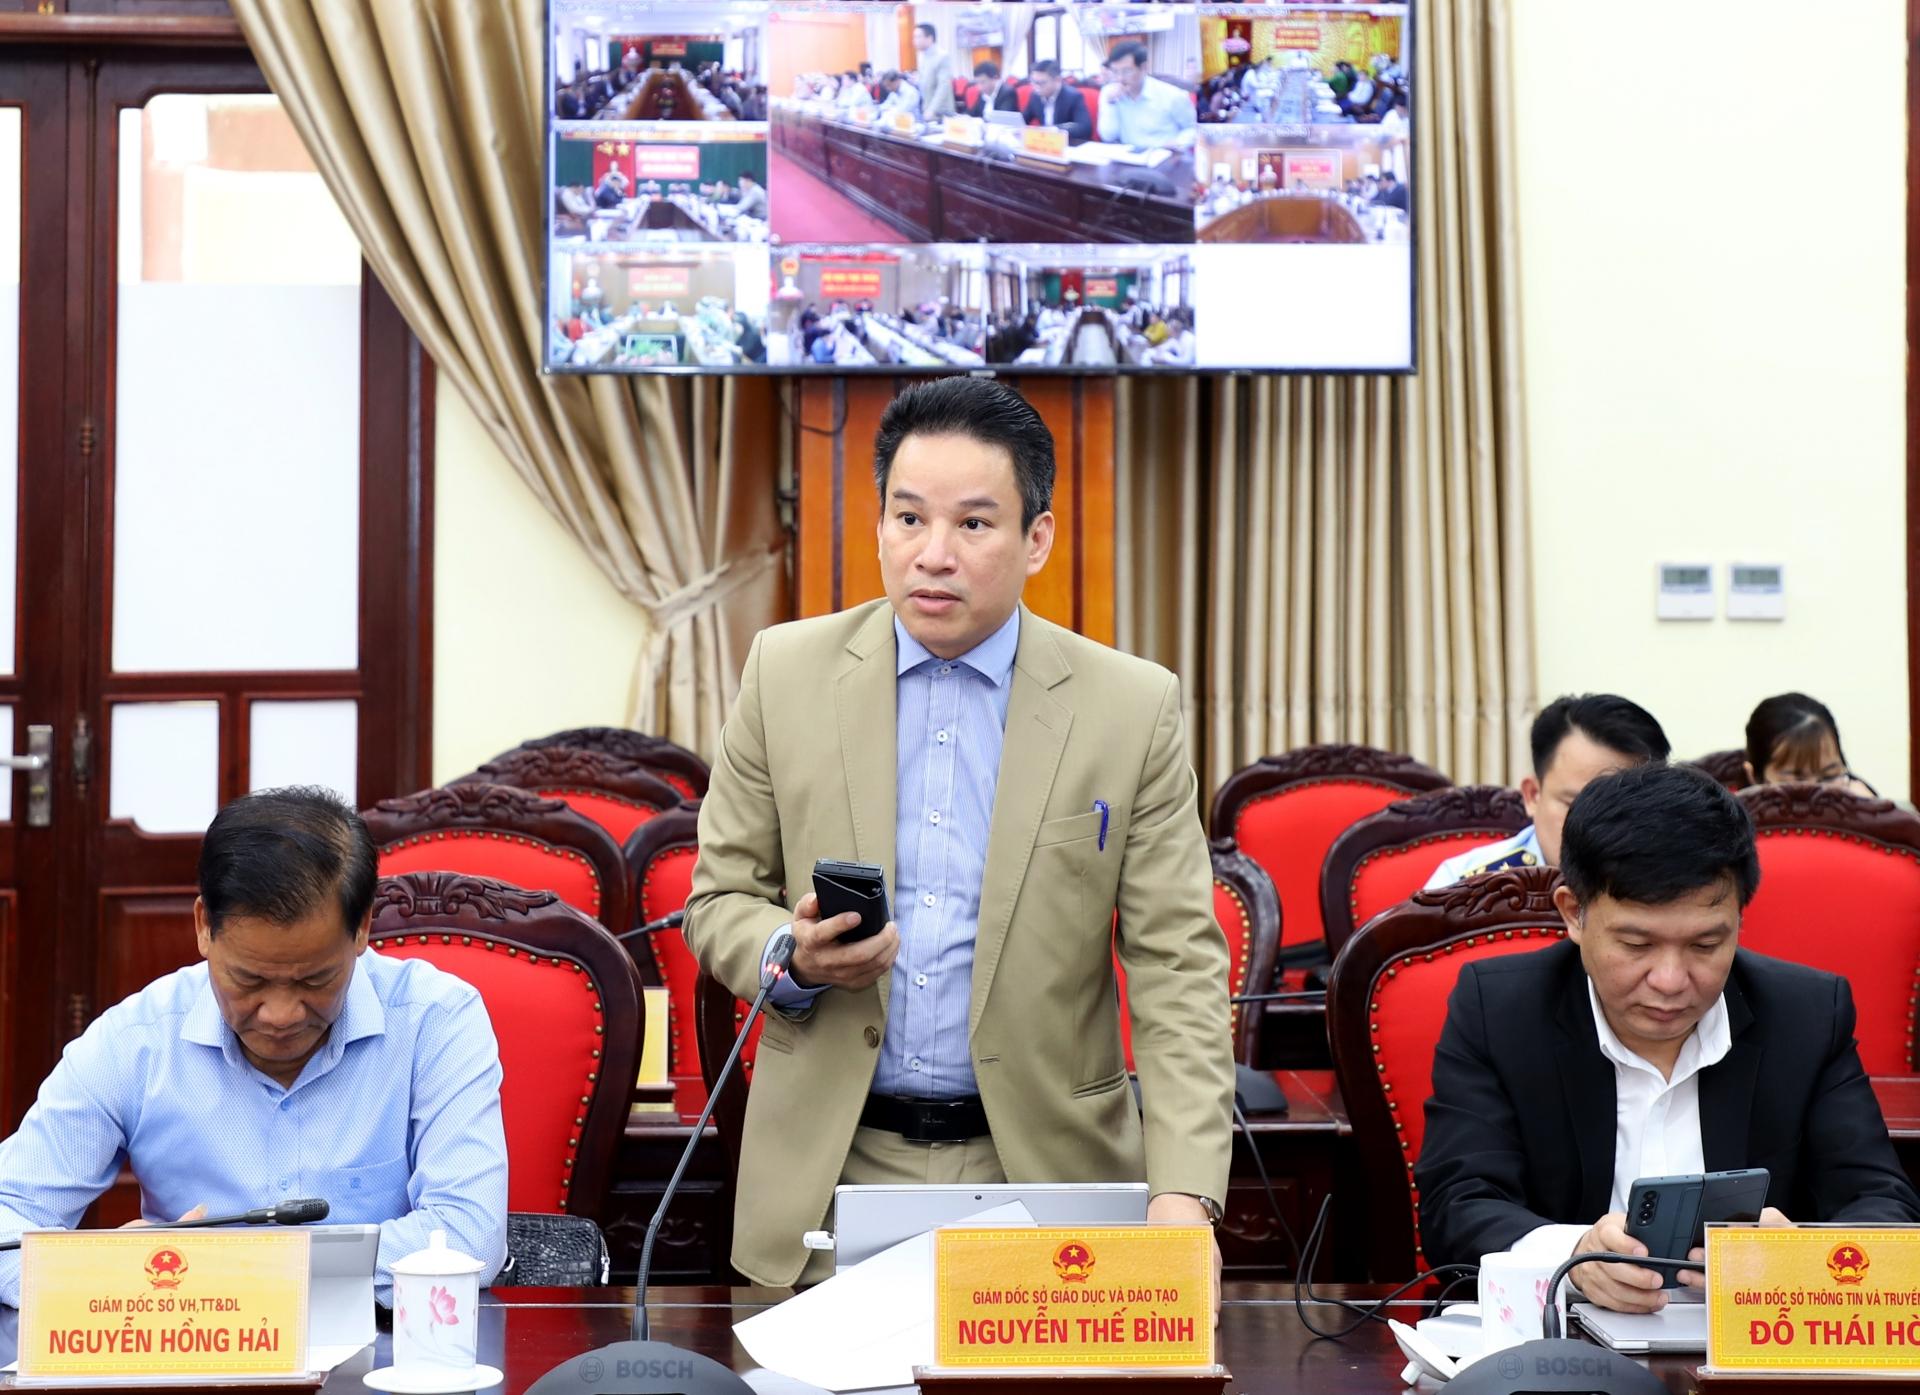 Giám đốc Sở Giáo dục và Đào tạo Nguyễn Thế Bình đề nghị các địa phương hoàn thành công tác tuyển dụng cán bộ được giao và đề xuất nhu cầu trong năm 2023; tập trung các điều kiện chuẩn bị kỳ thi tốt nghiệp THPT năm 2023.